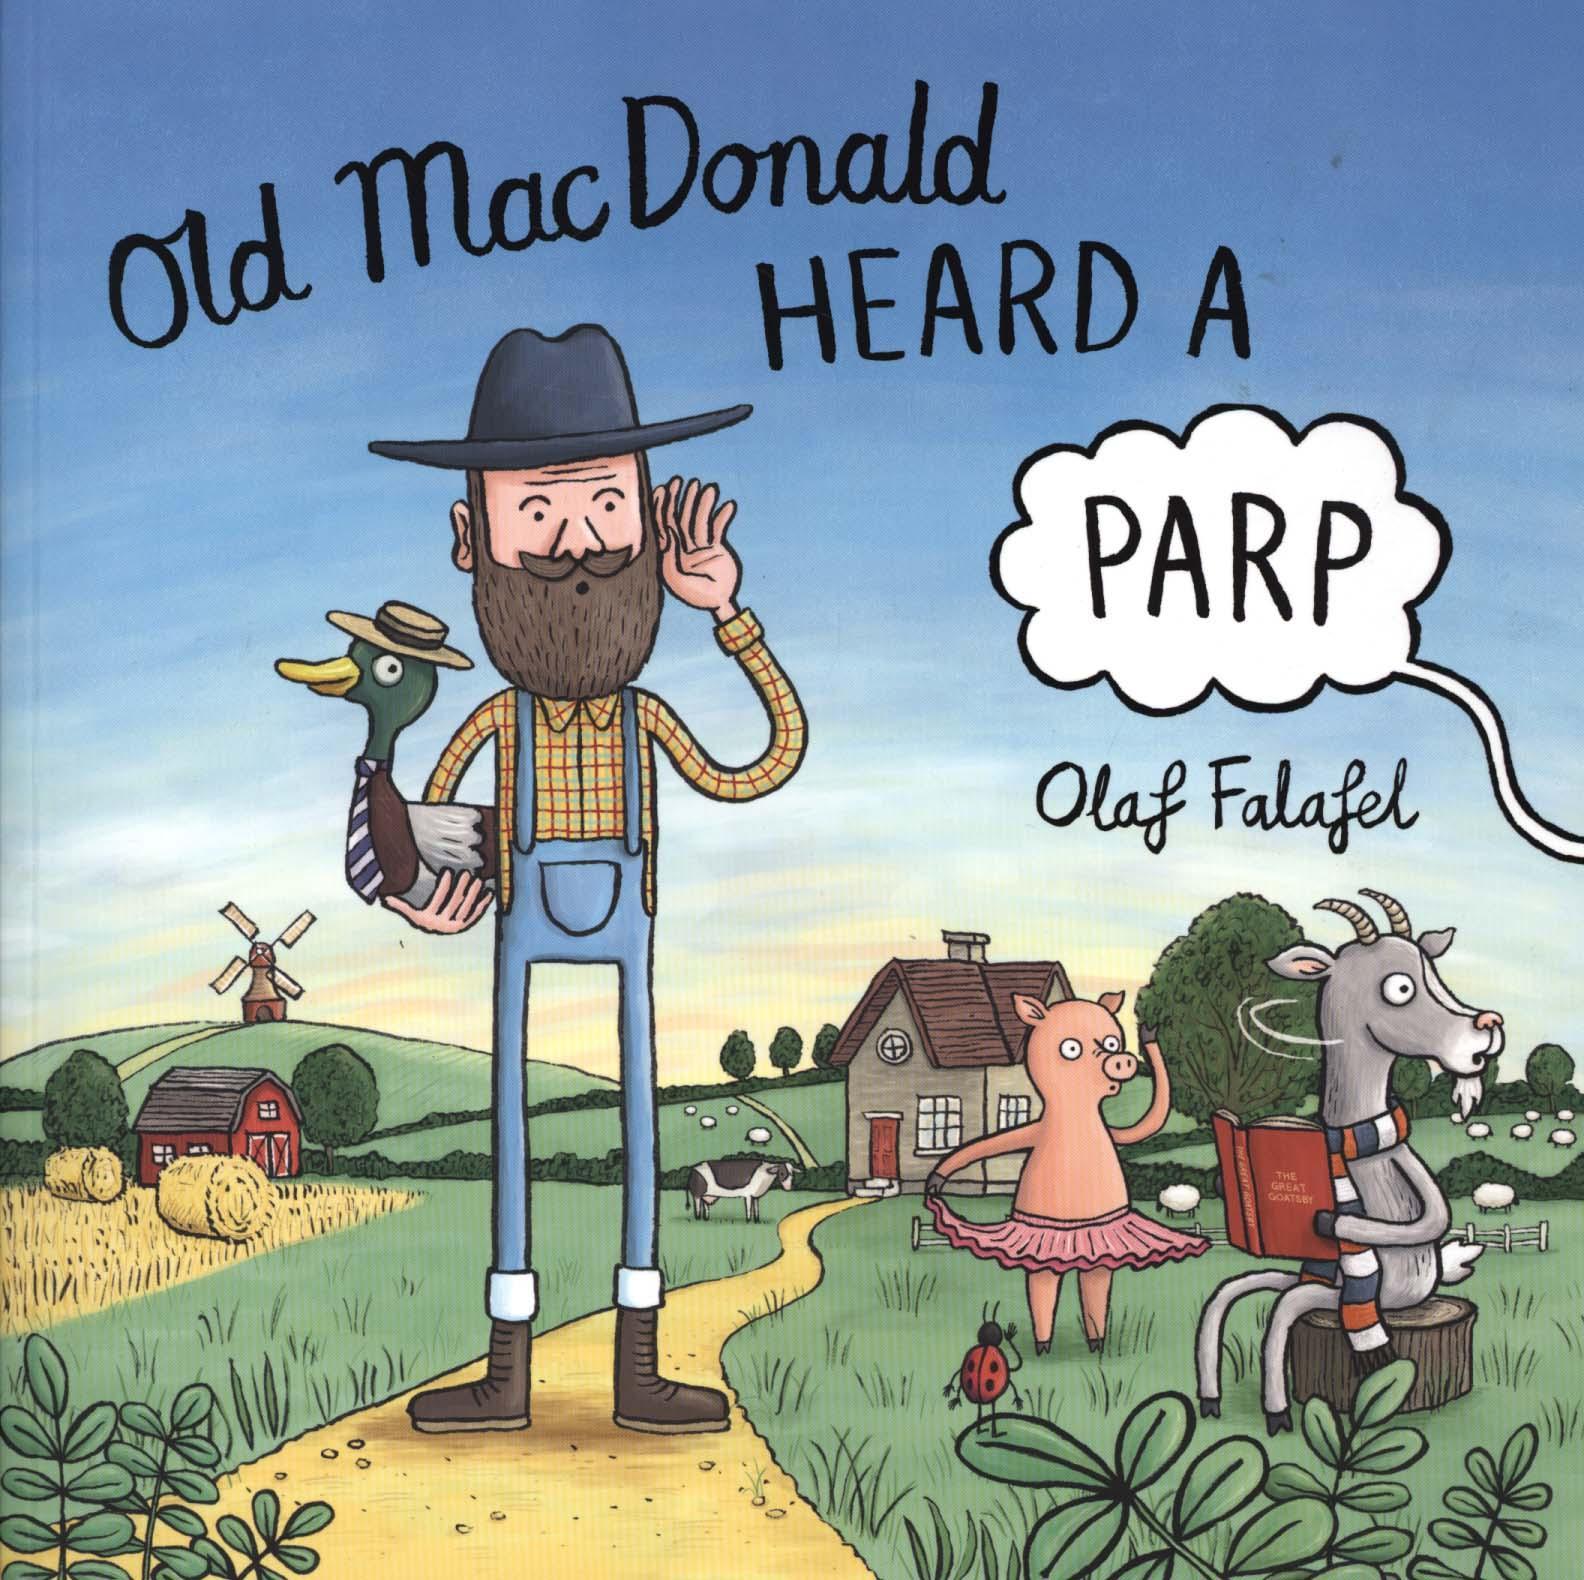 Old MacDonald Heard a Parp